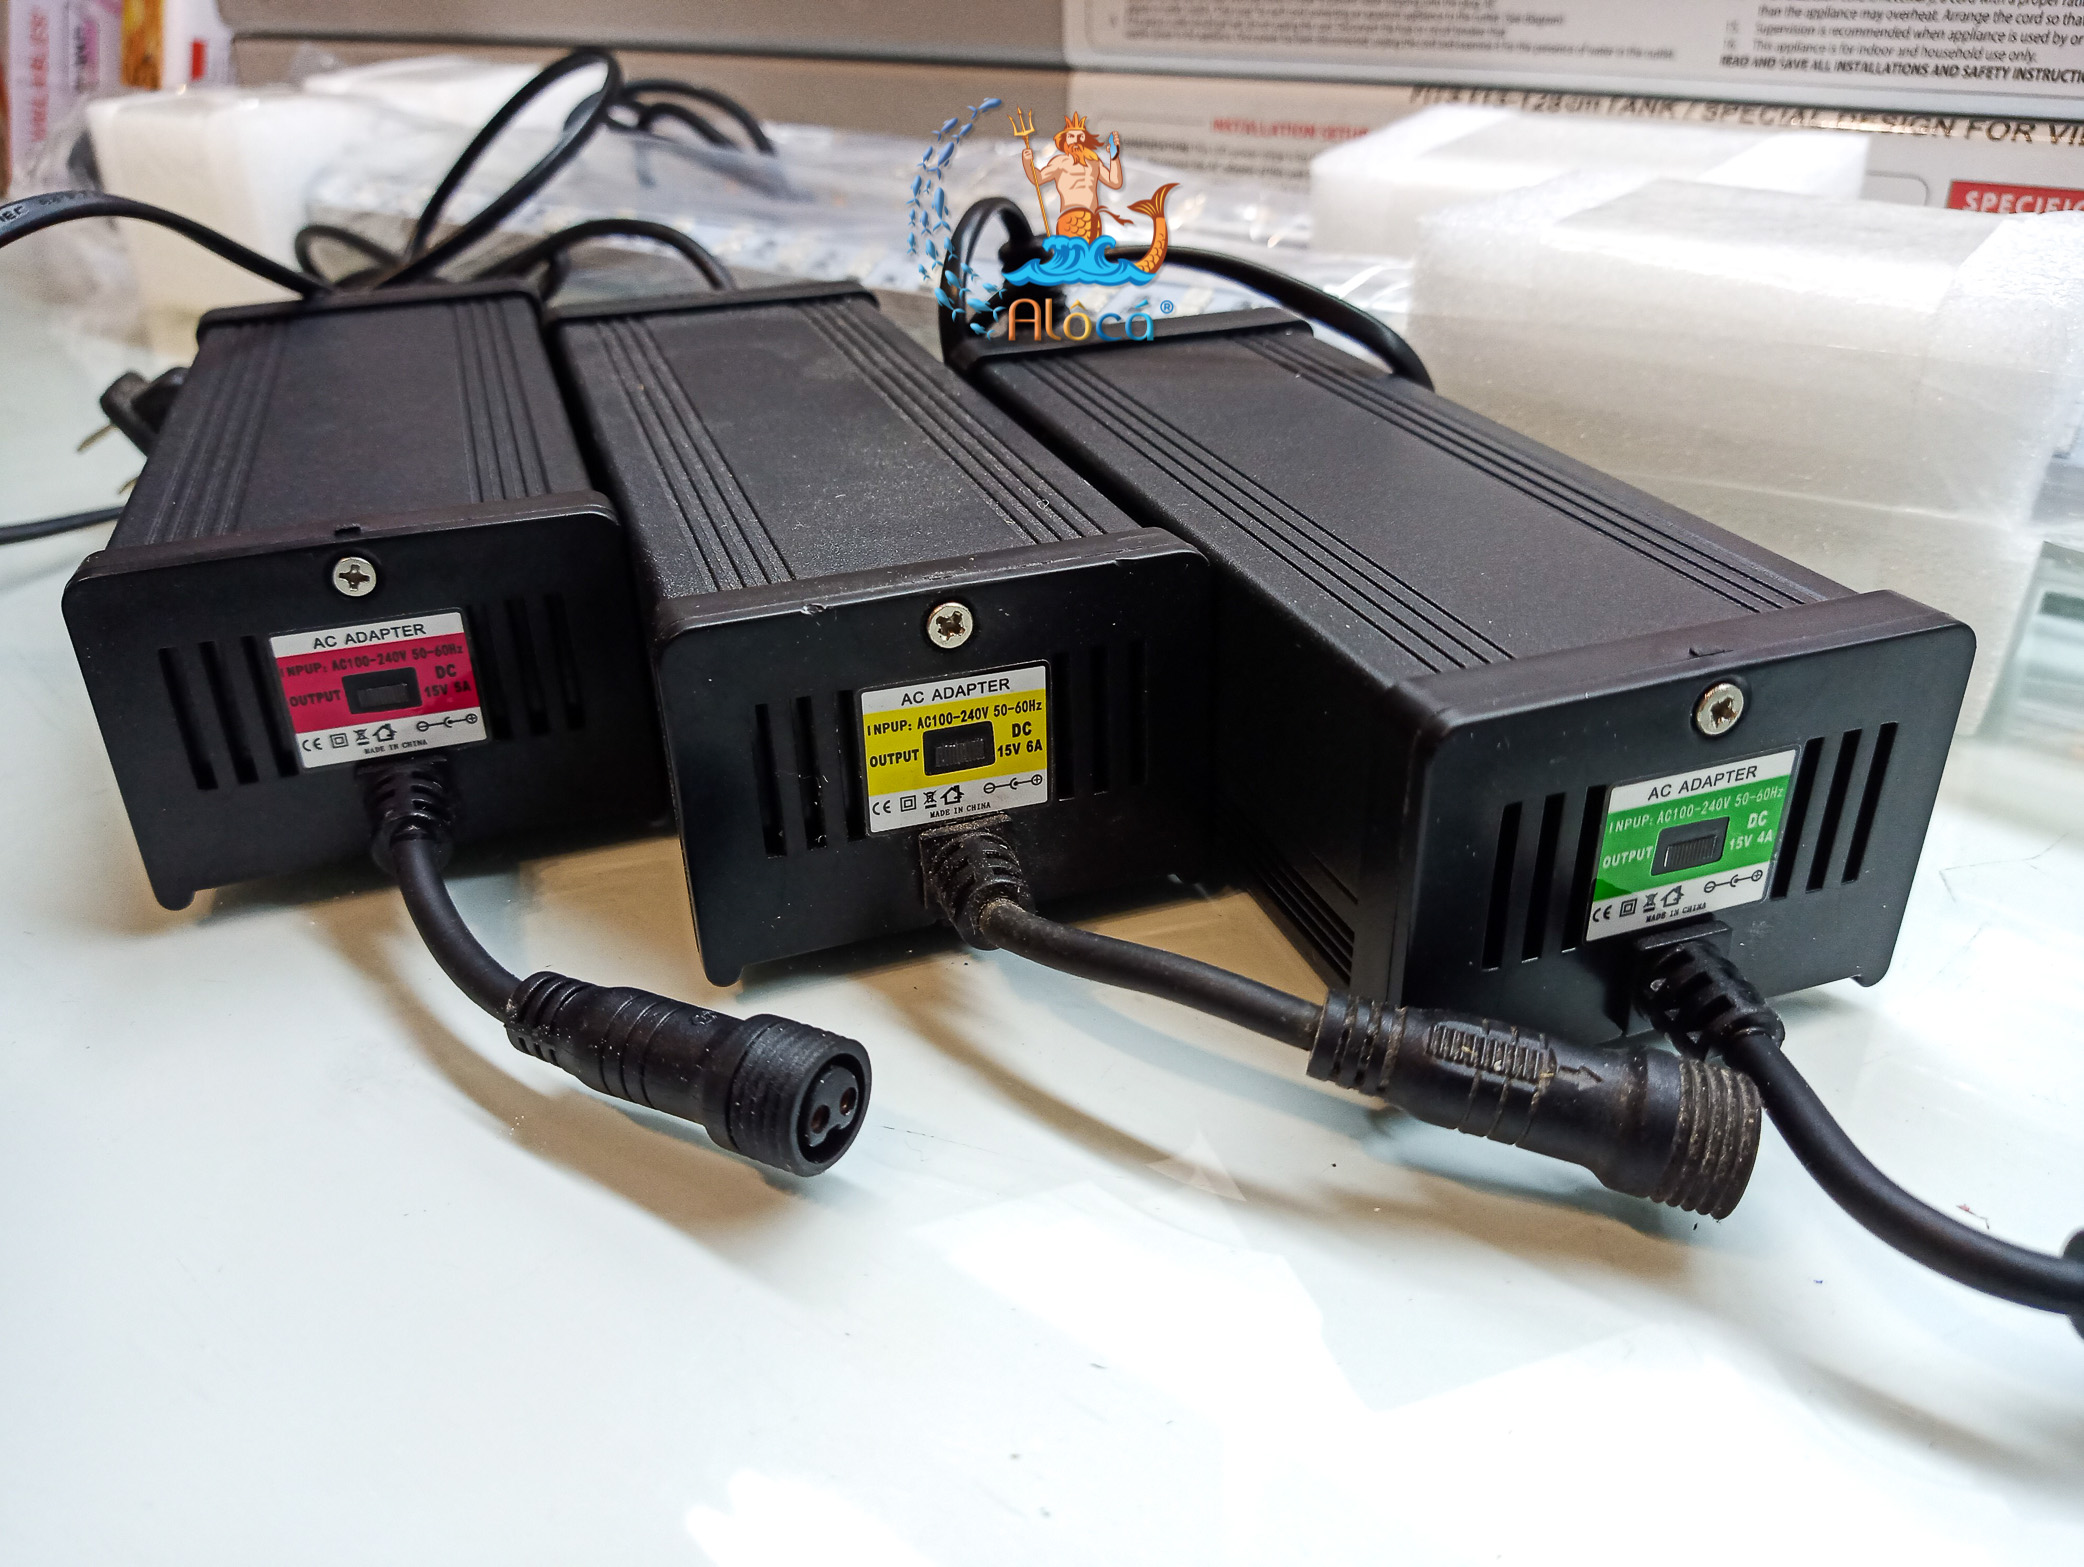 Nguồn Ballast cho đèn SRV4, SGV4 1m2, 1m5, 1m7 dùng trong bể cá cảnh thumbnail